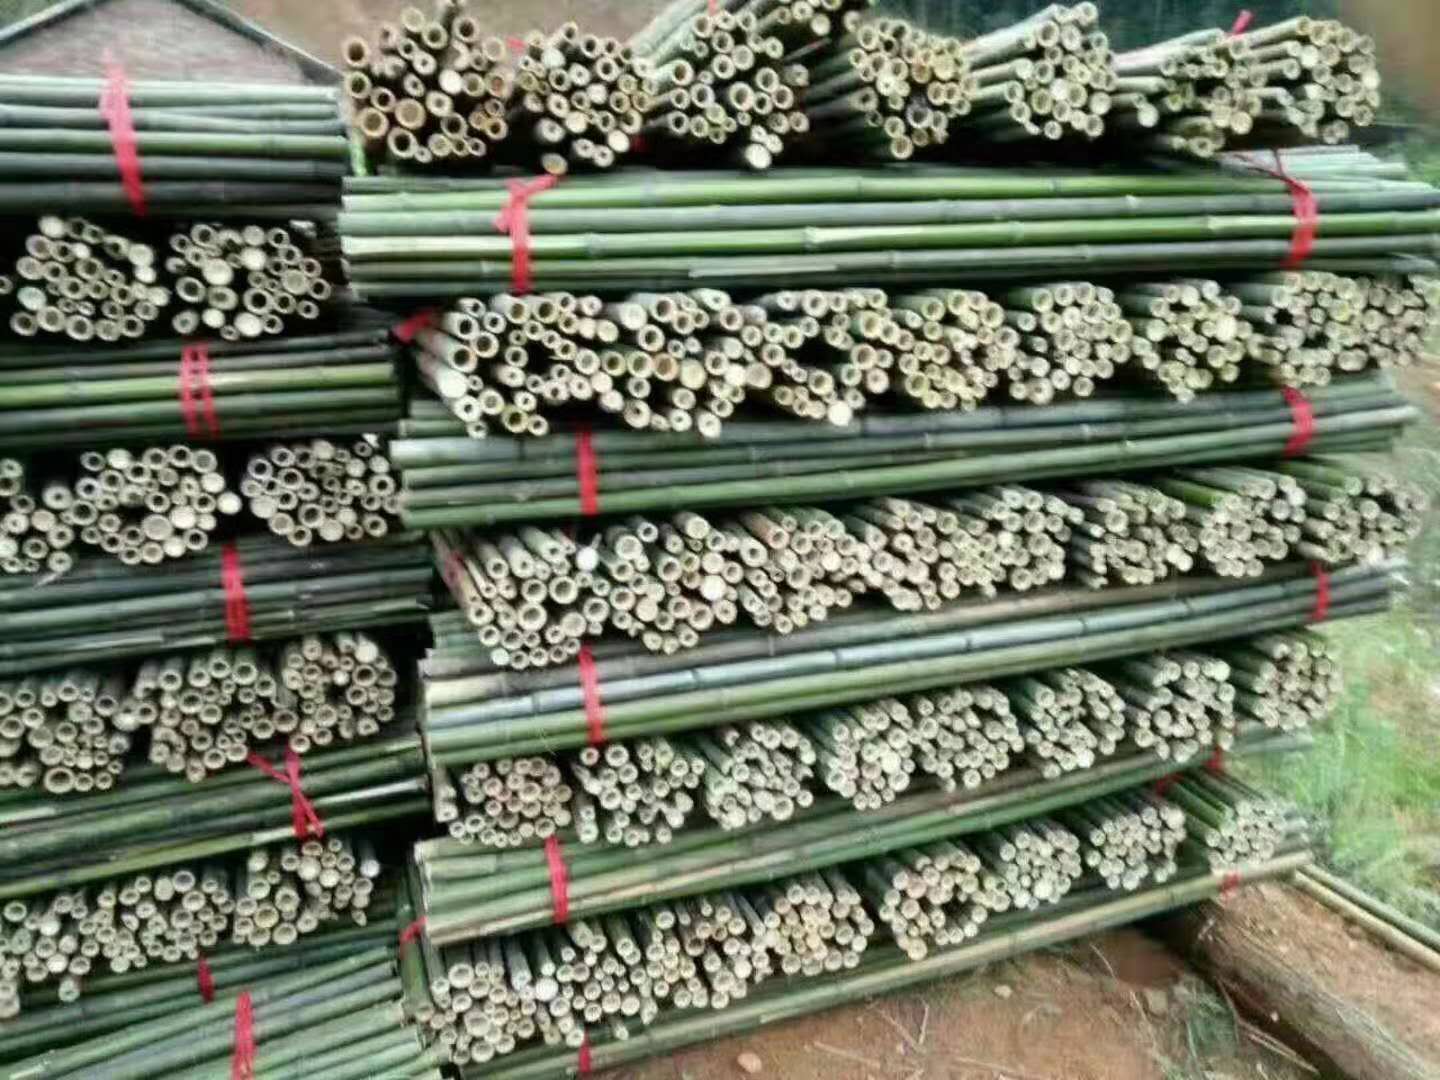 湖南衡阳市竹木供销有限公司 供应竹杆、竹片、竹架板